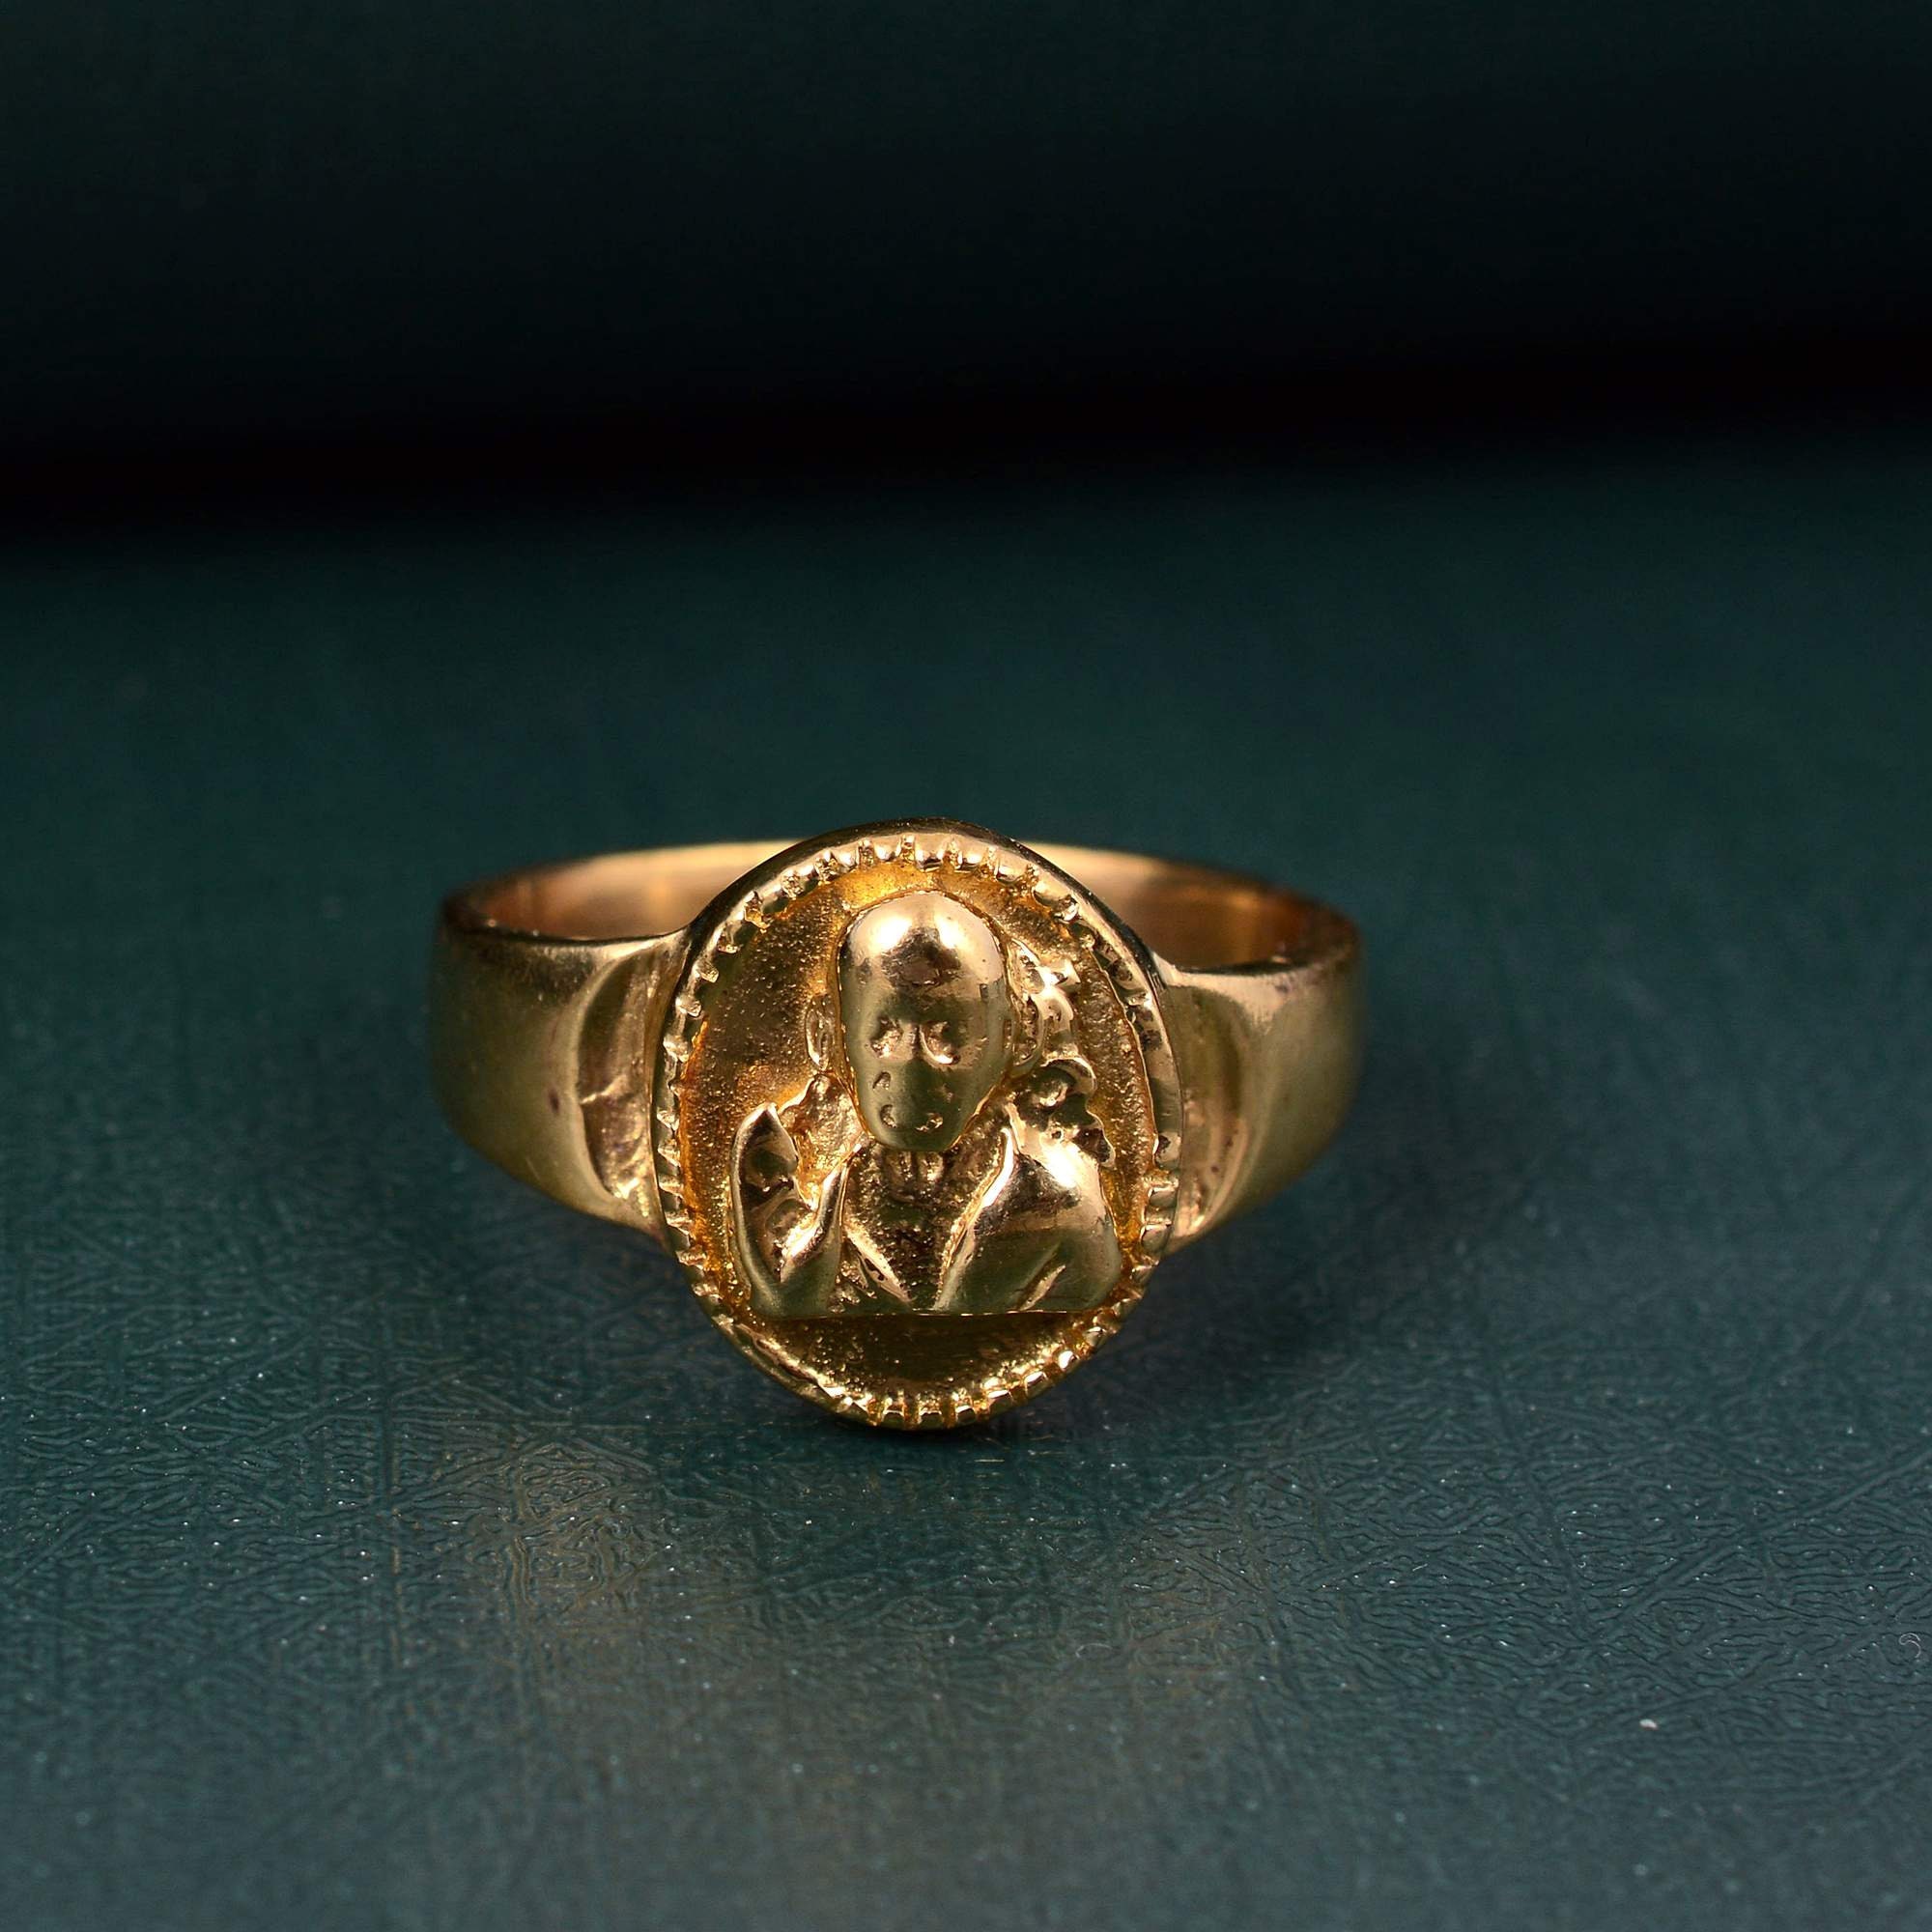 Nakshi worked ring | Gold earrings designs, Rings for men, Rings